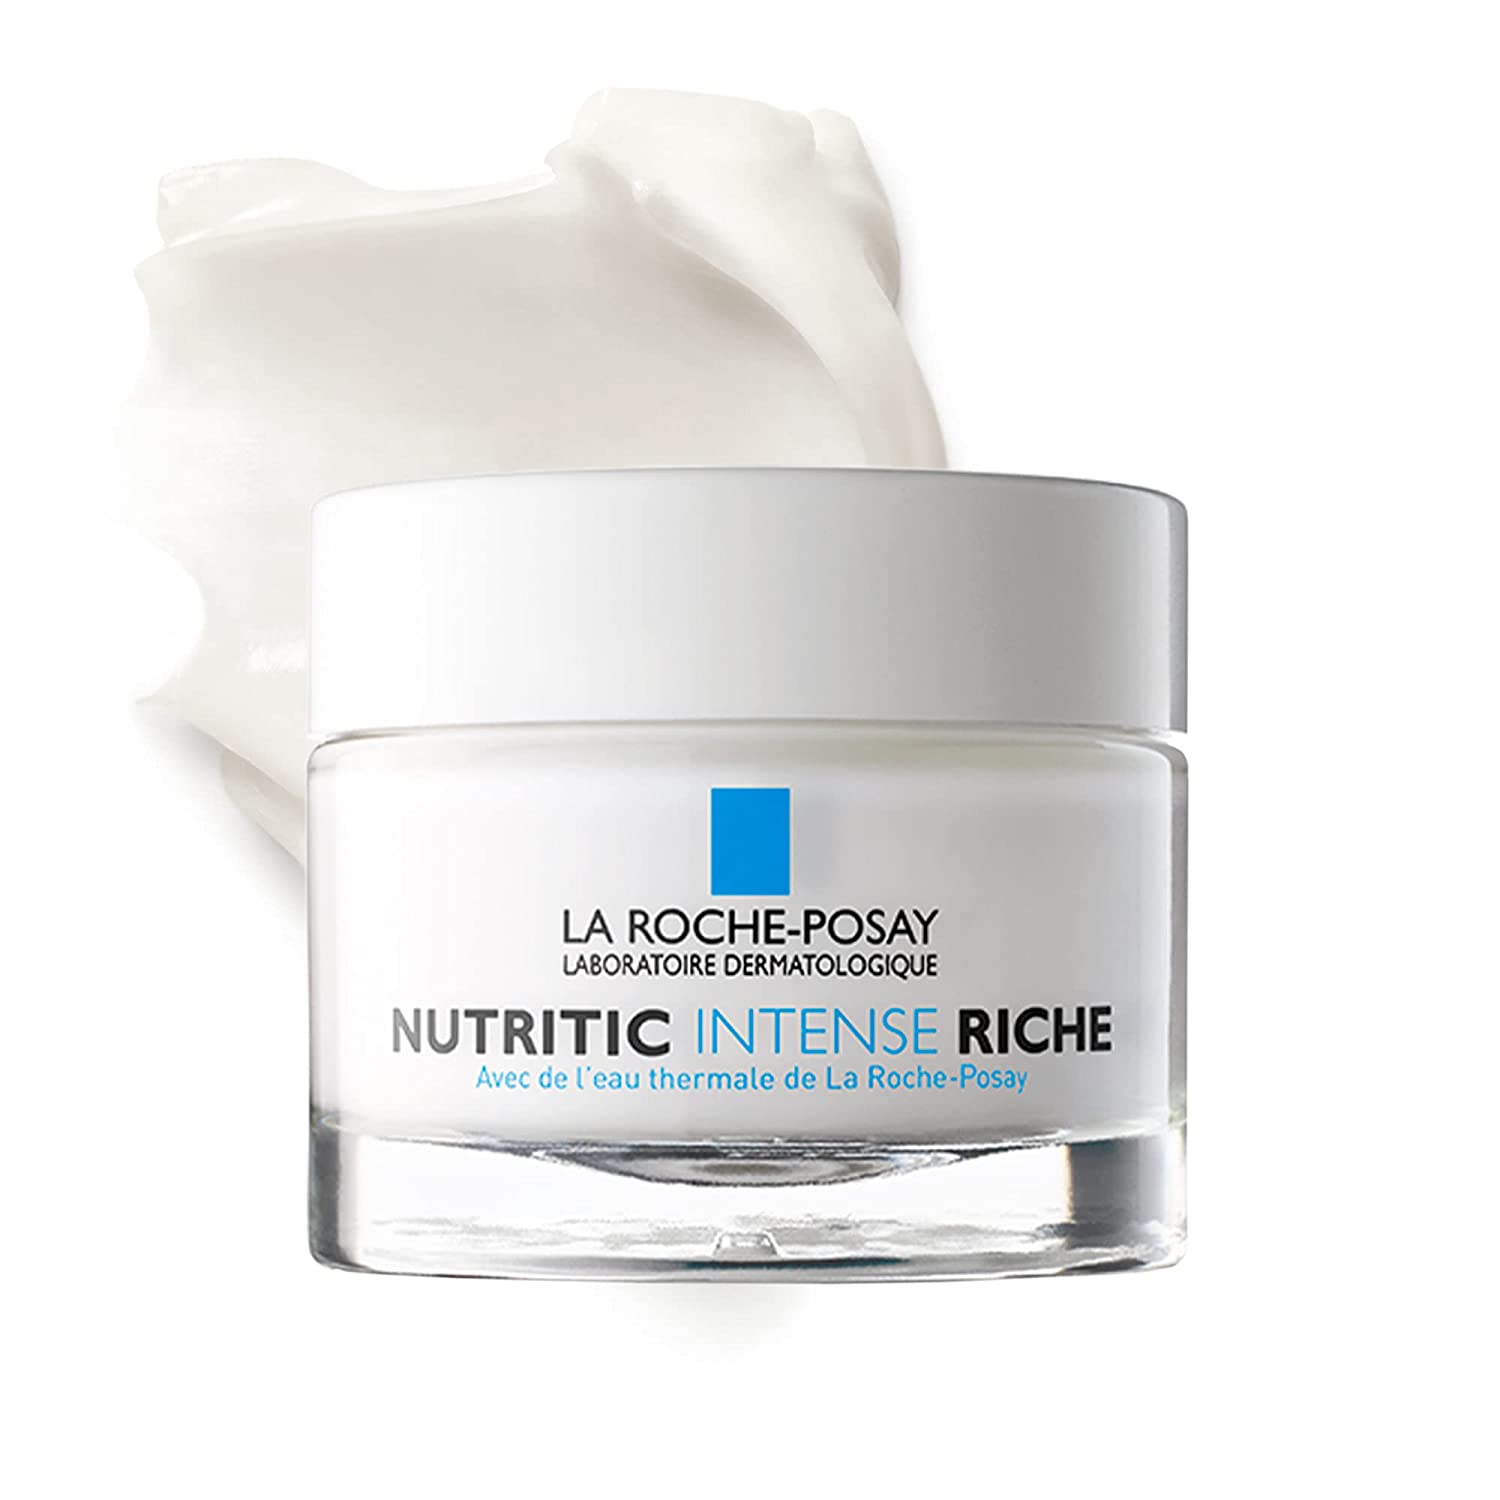 La Roche-Posay Nutritic Intense Cream Rich 50 ml Pack of 1, ‎white